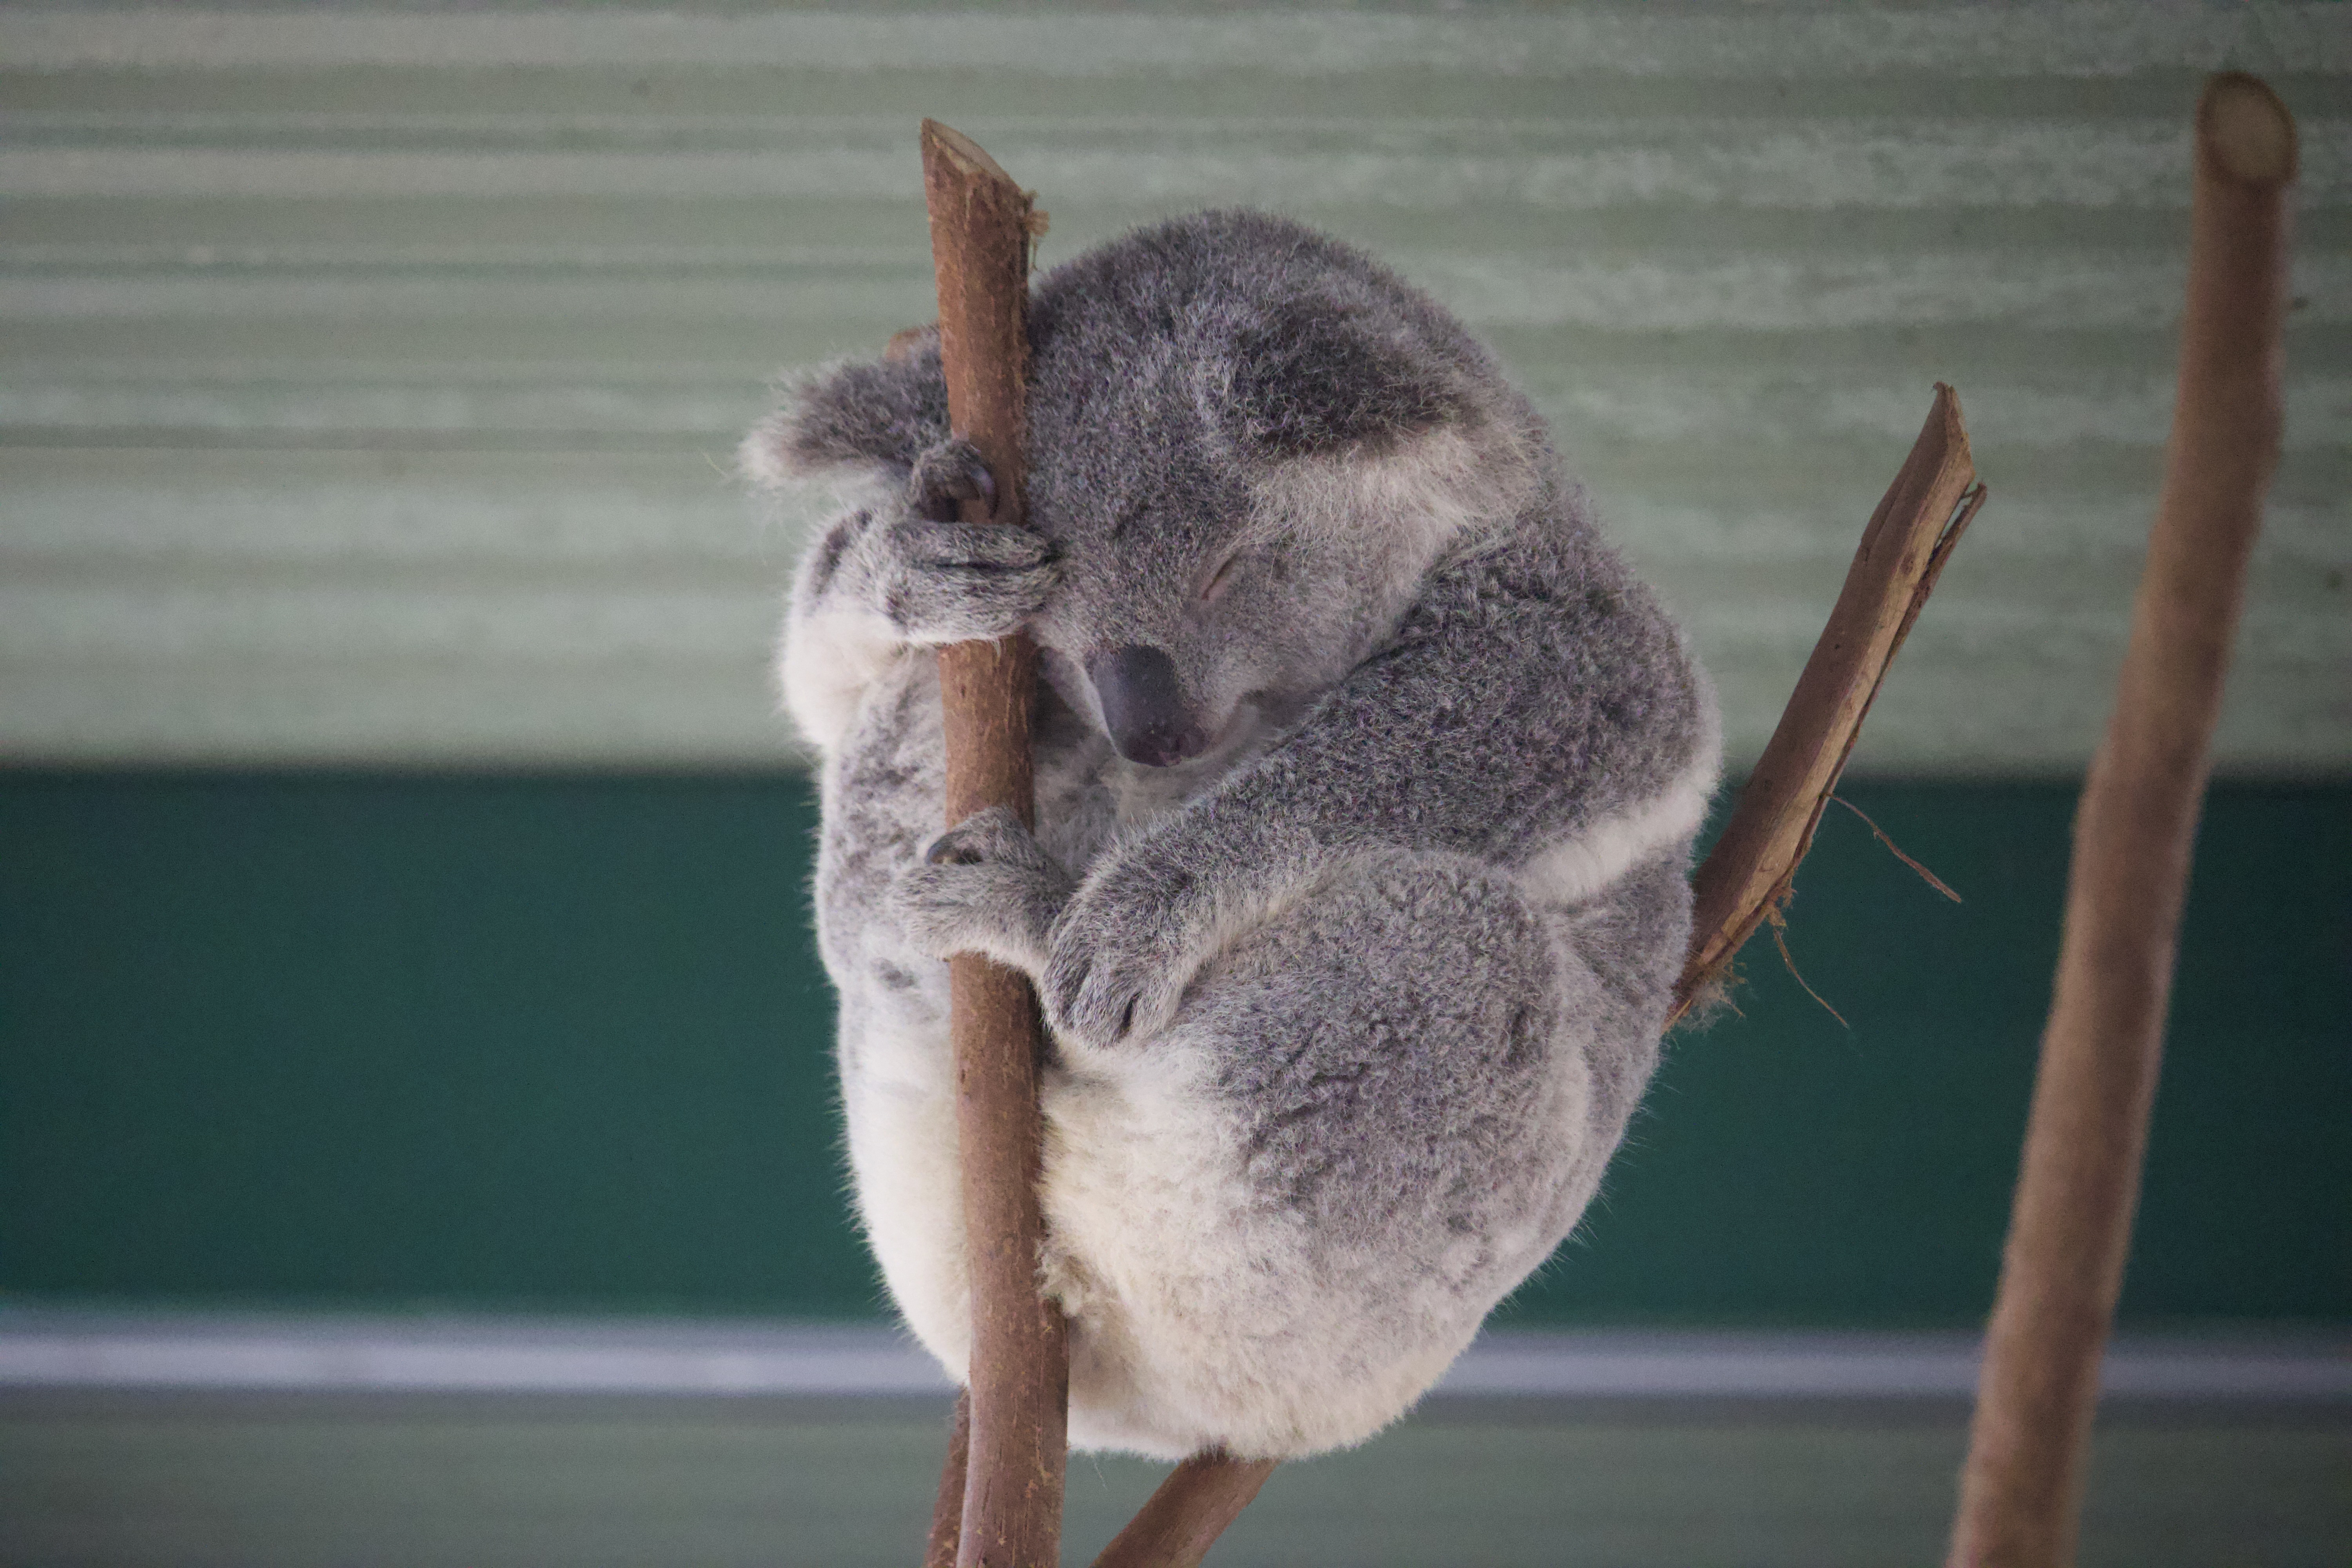 A sleeping Koala bear